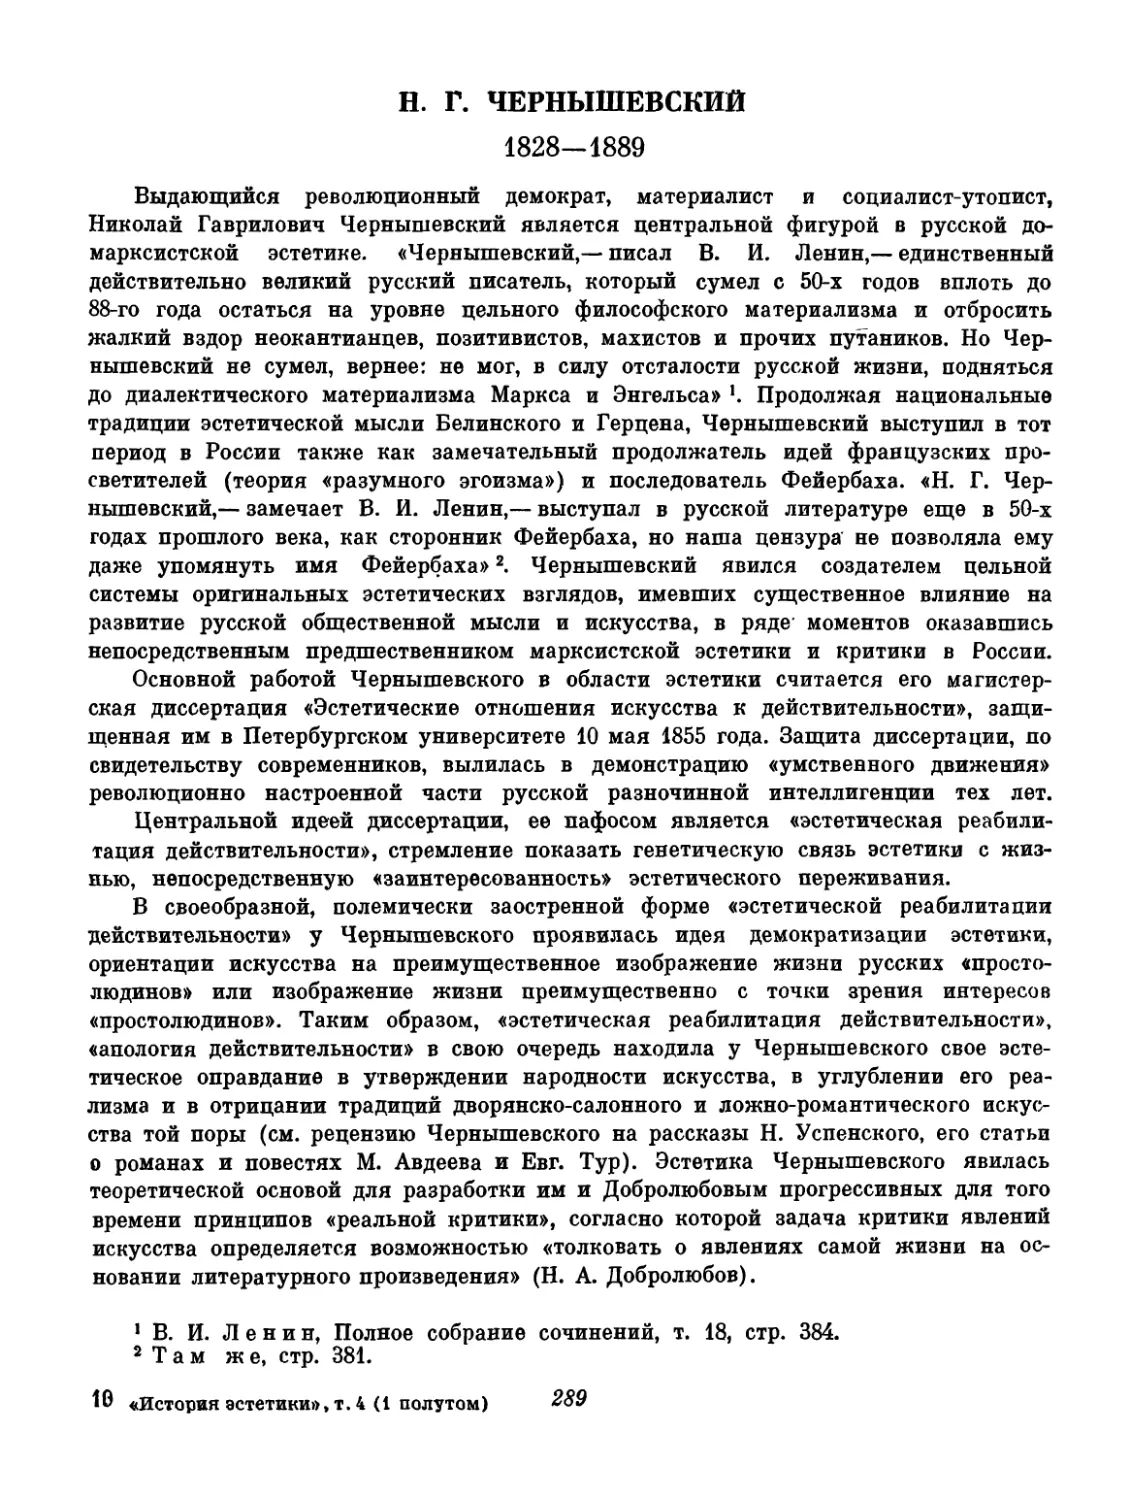 Чернышевский. Вступительный текст и составление А. А. Лебедева